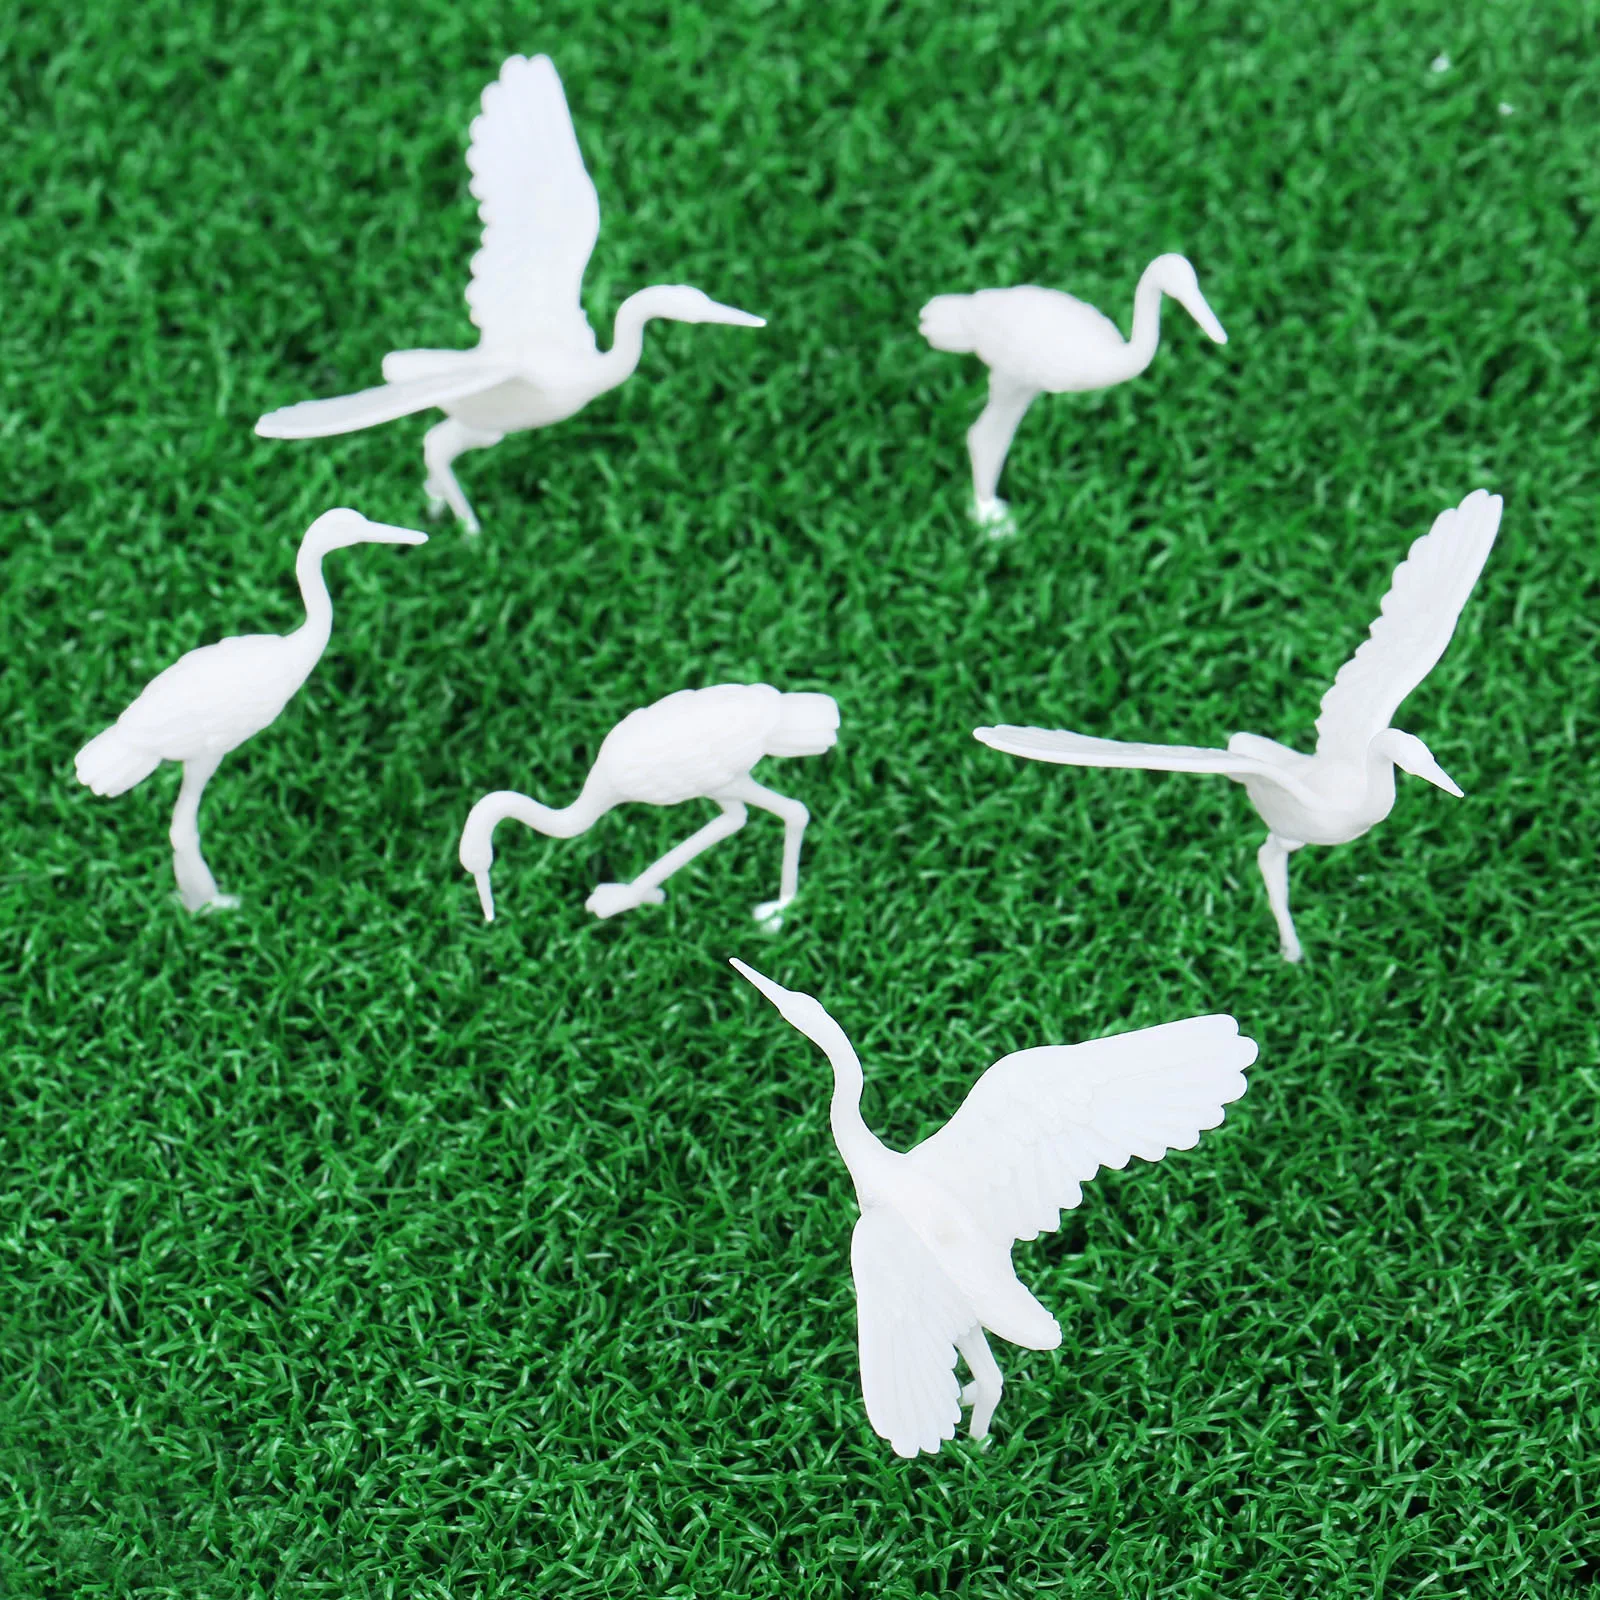 10pc 35mm Red-crowned Crane Models Mini Swan Birds figure Plastic Toy Unique Decoration Scenes Layout Miniatures Landscape Decor